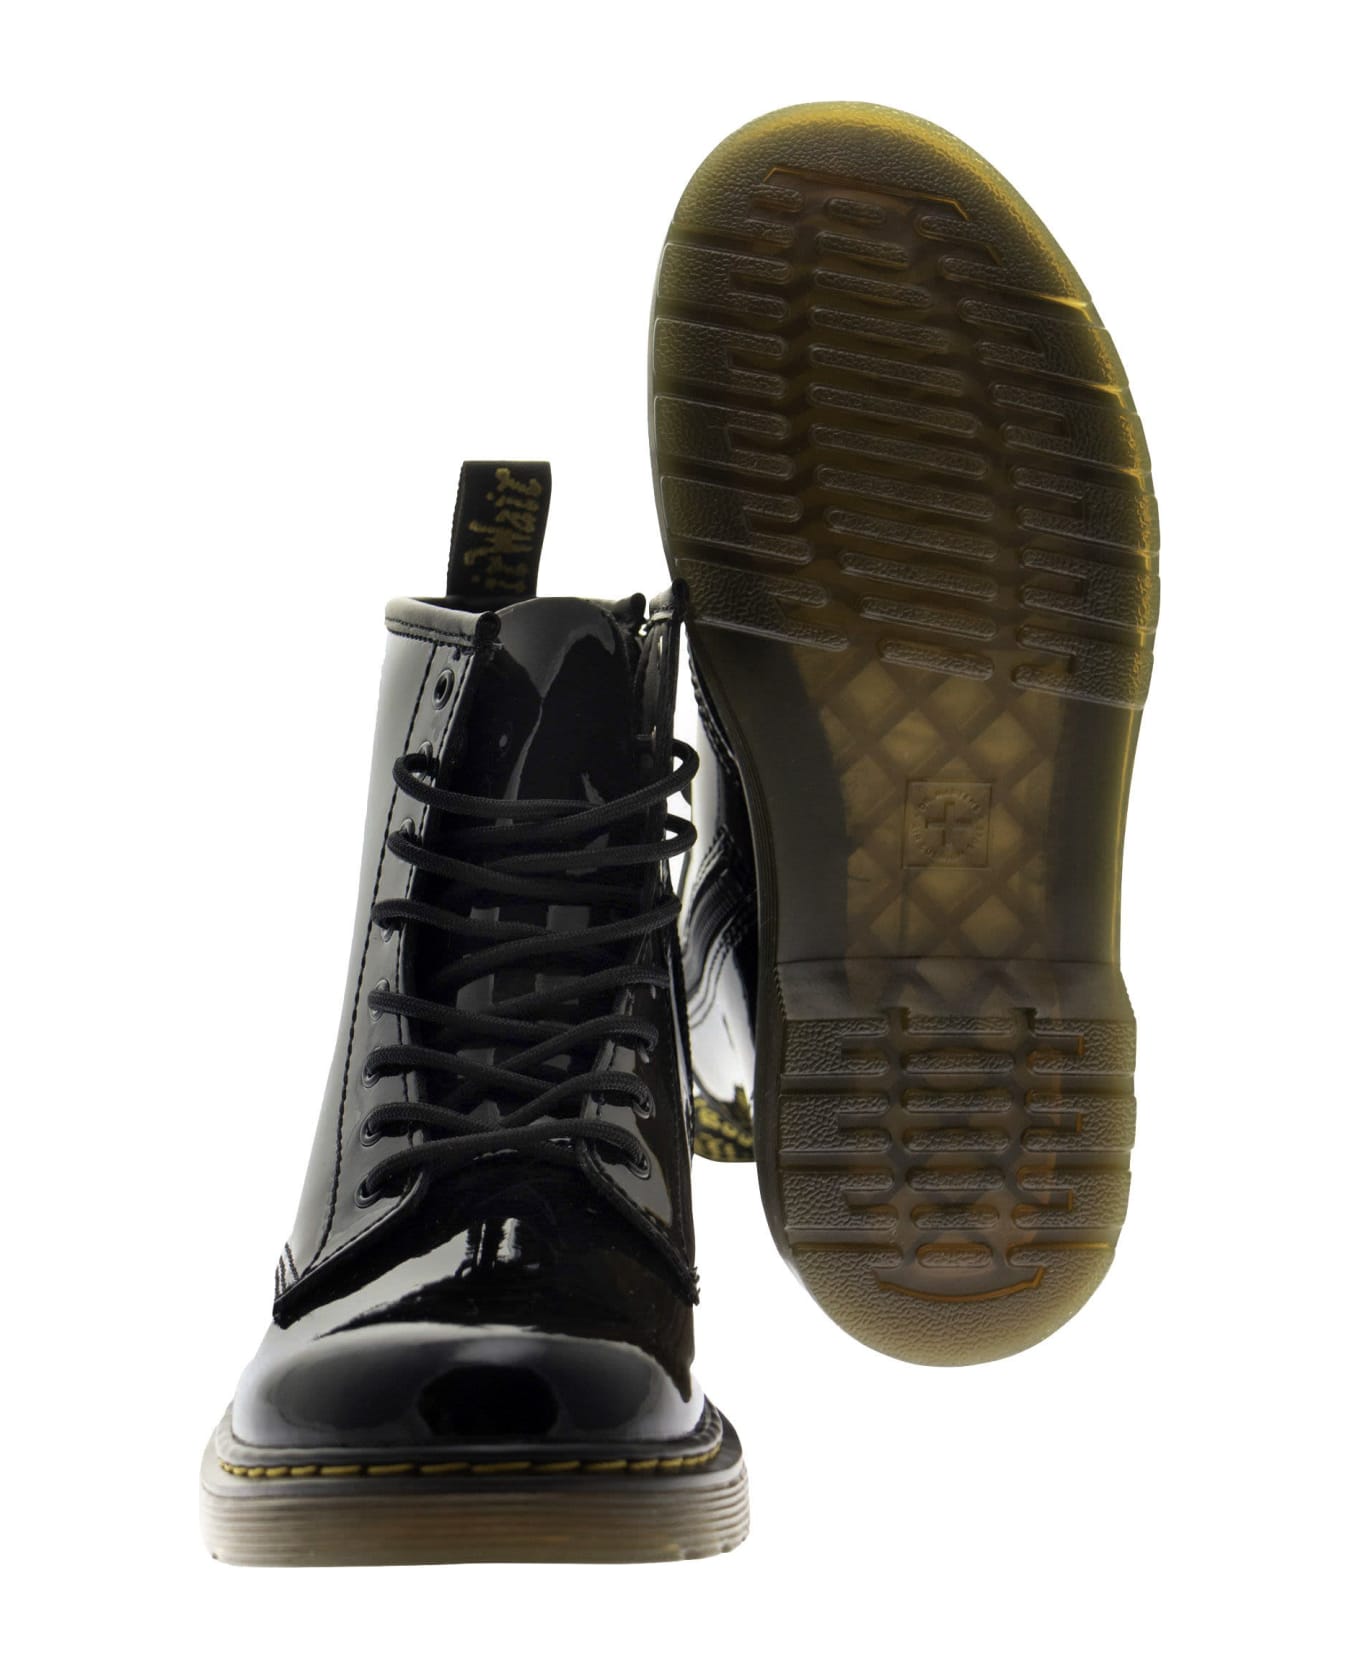 Dr. Martens 1460 - Matt Leather Lace-up Boots - Black シューズ